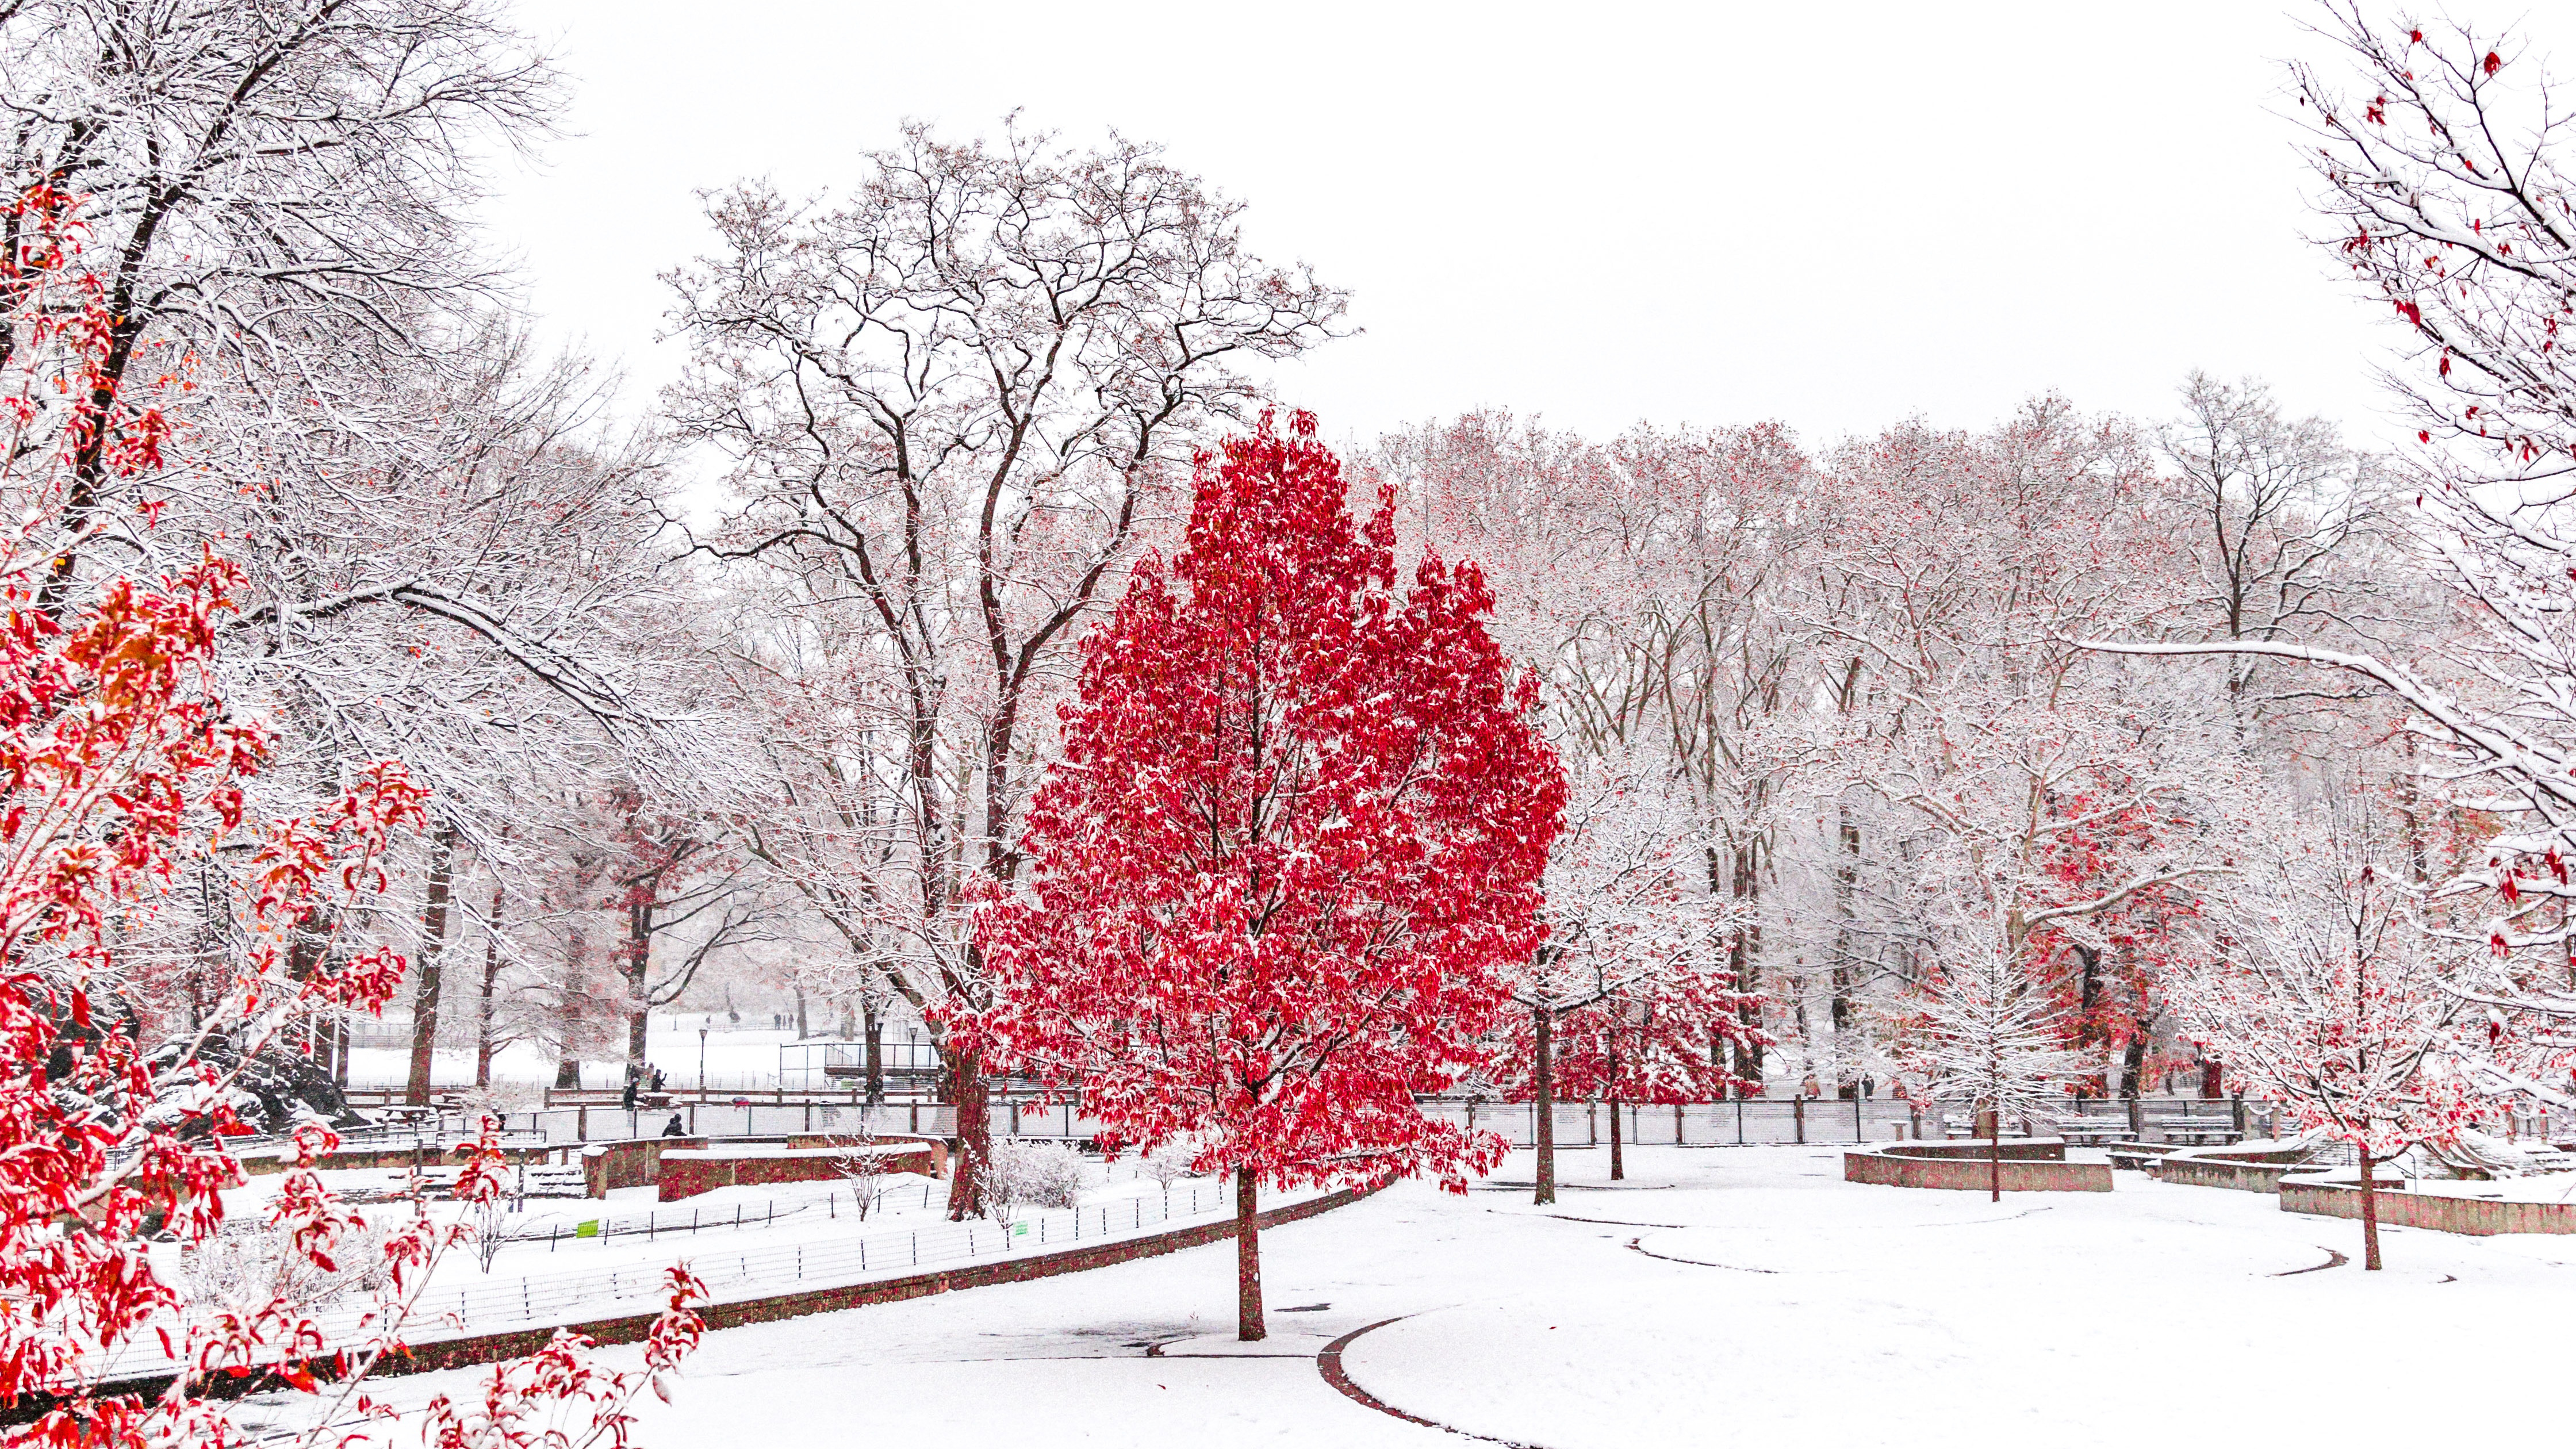 Central Park Snow 4480x2520